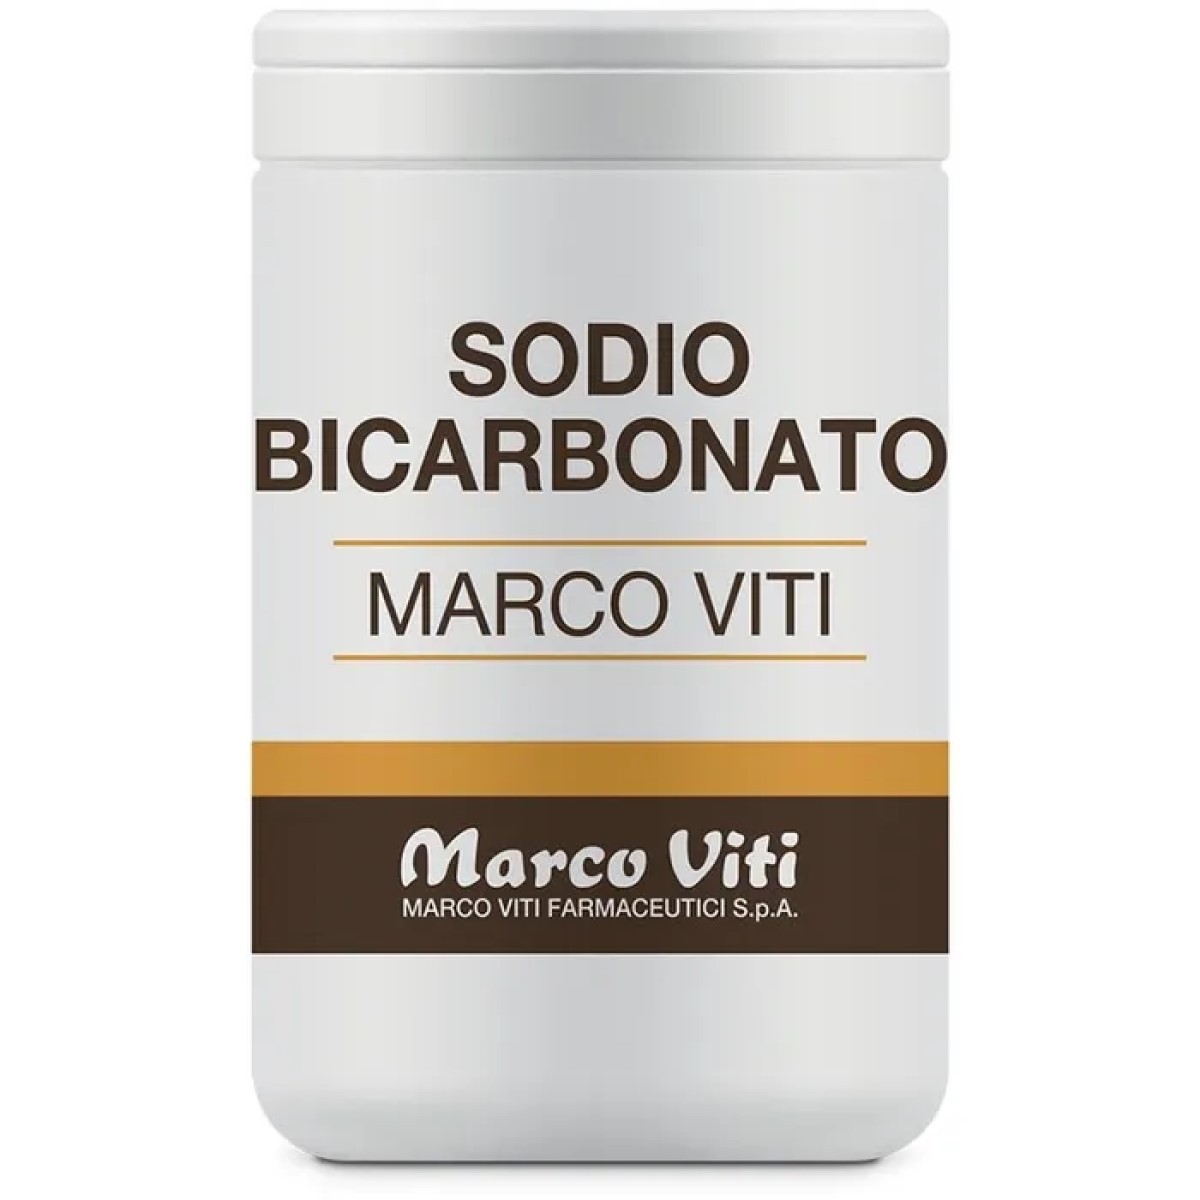 Marco Viti Sodio Bicarbonato 200g